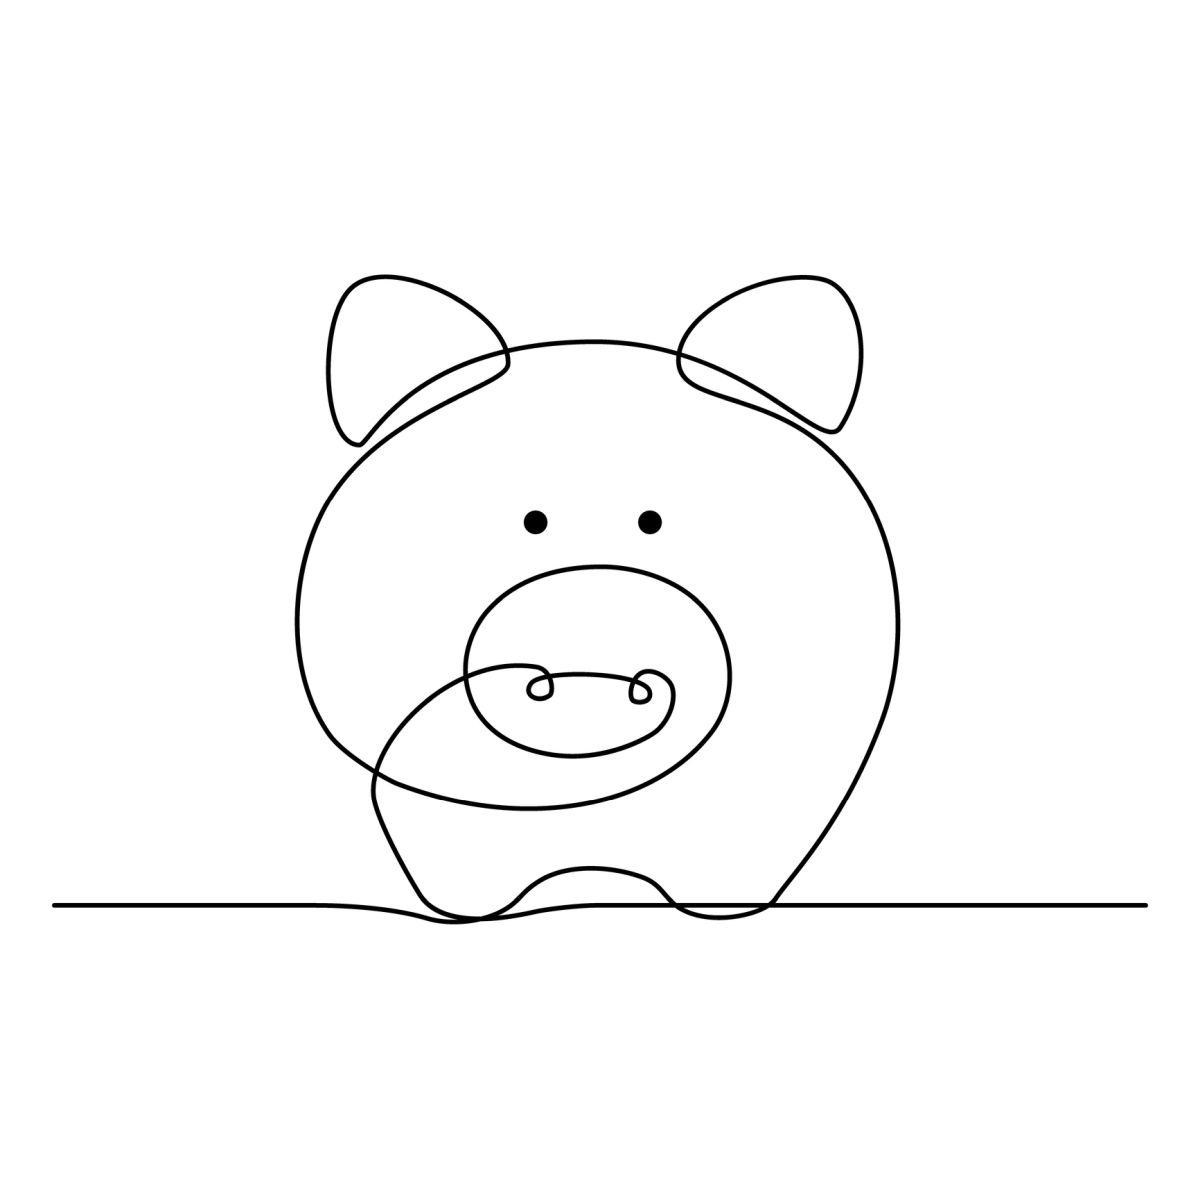 Како нацртати свињу: 10 лаких пројеката за цртање